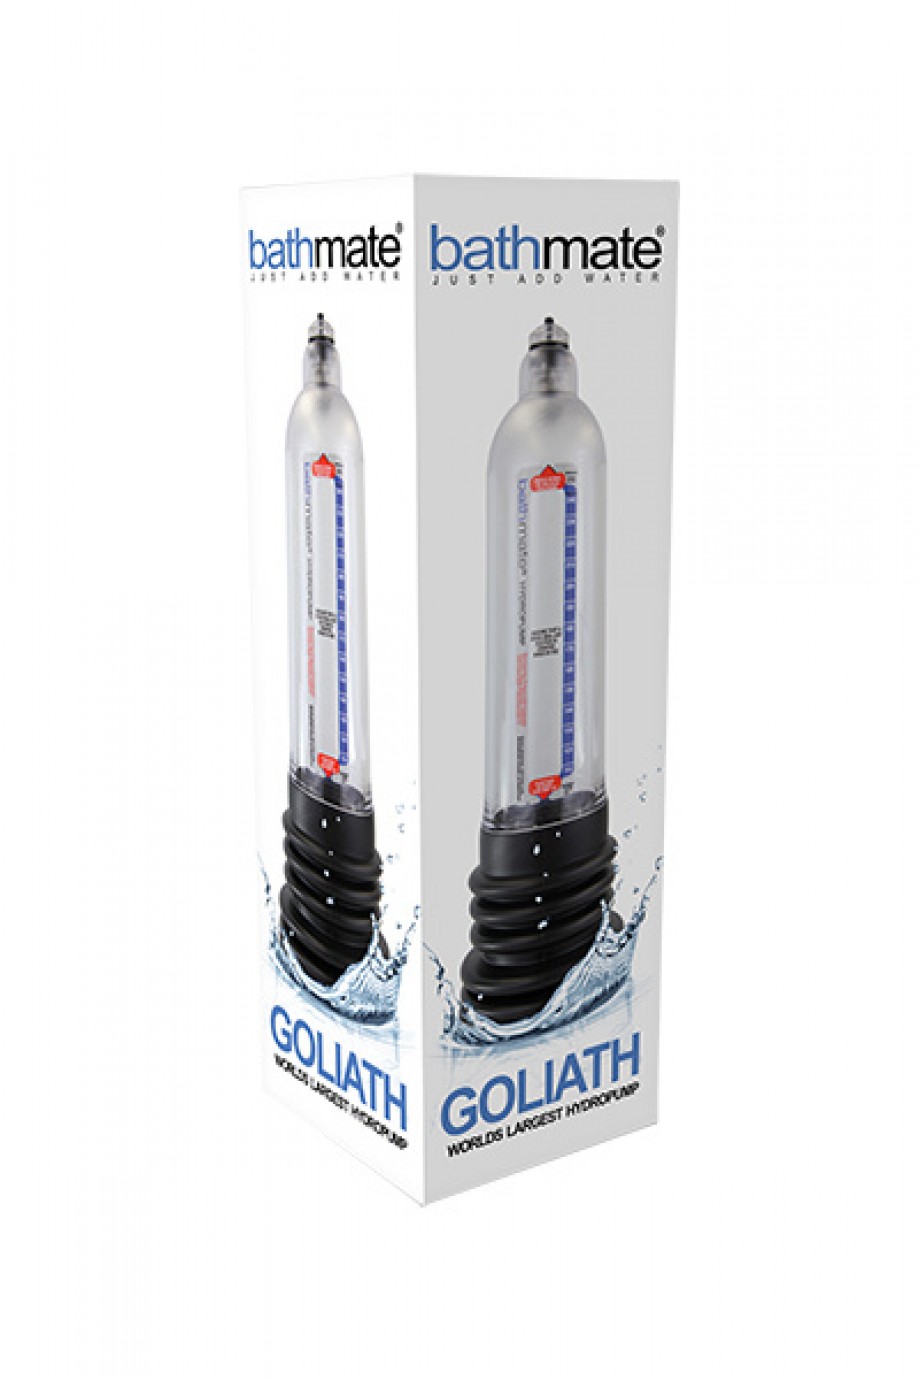 Bathmate Goliath, помпа для члена